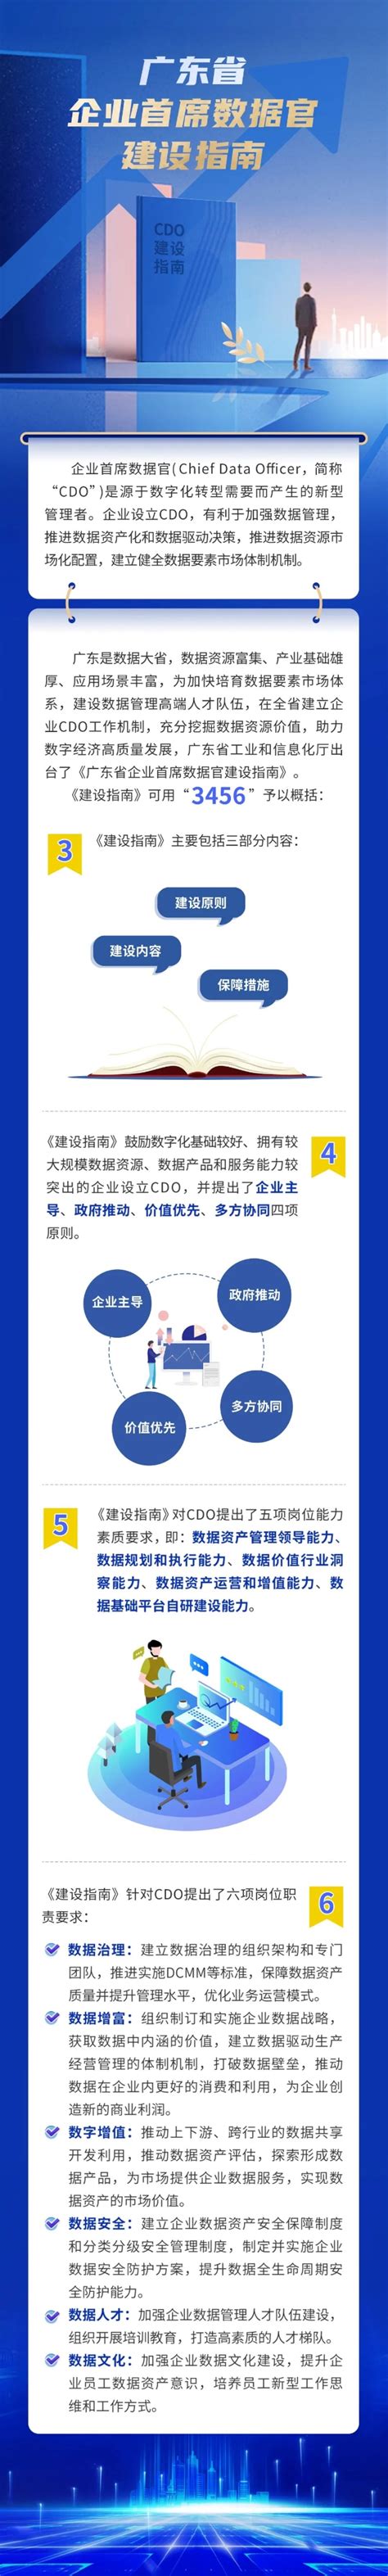 广东省出台企业首席数据官建设指南（附图解）_资讯中心_中国物流与采购网